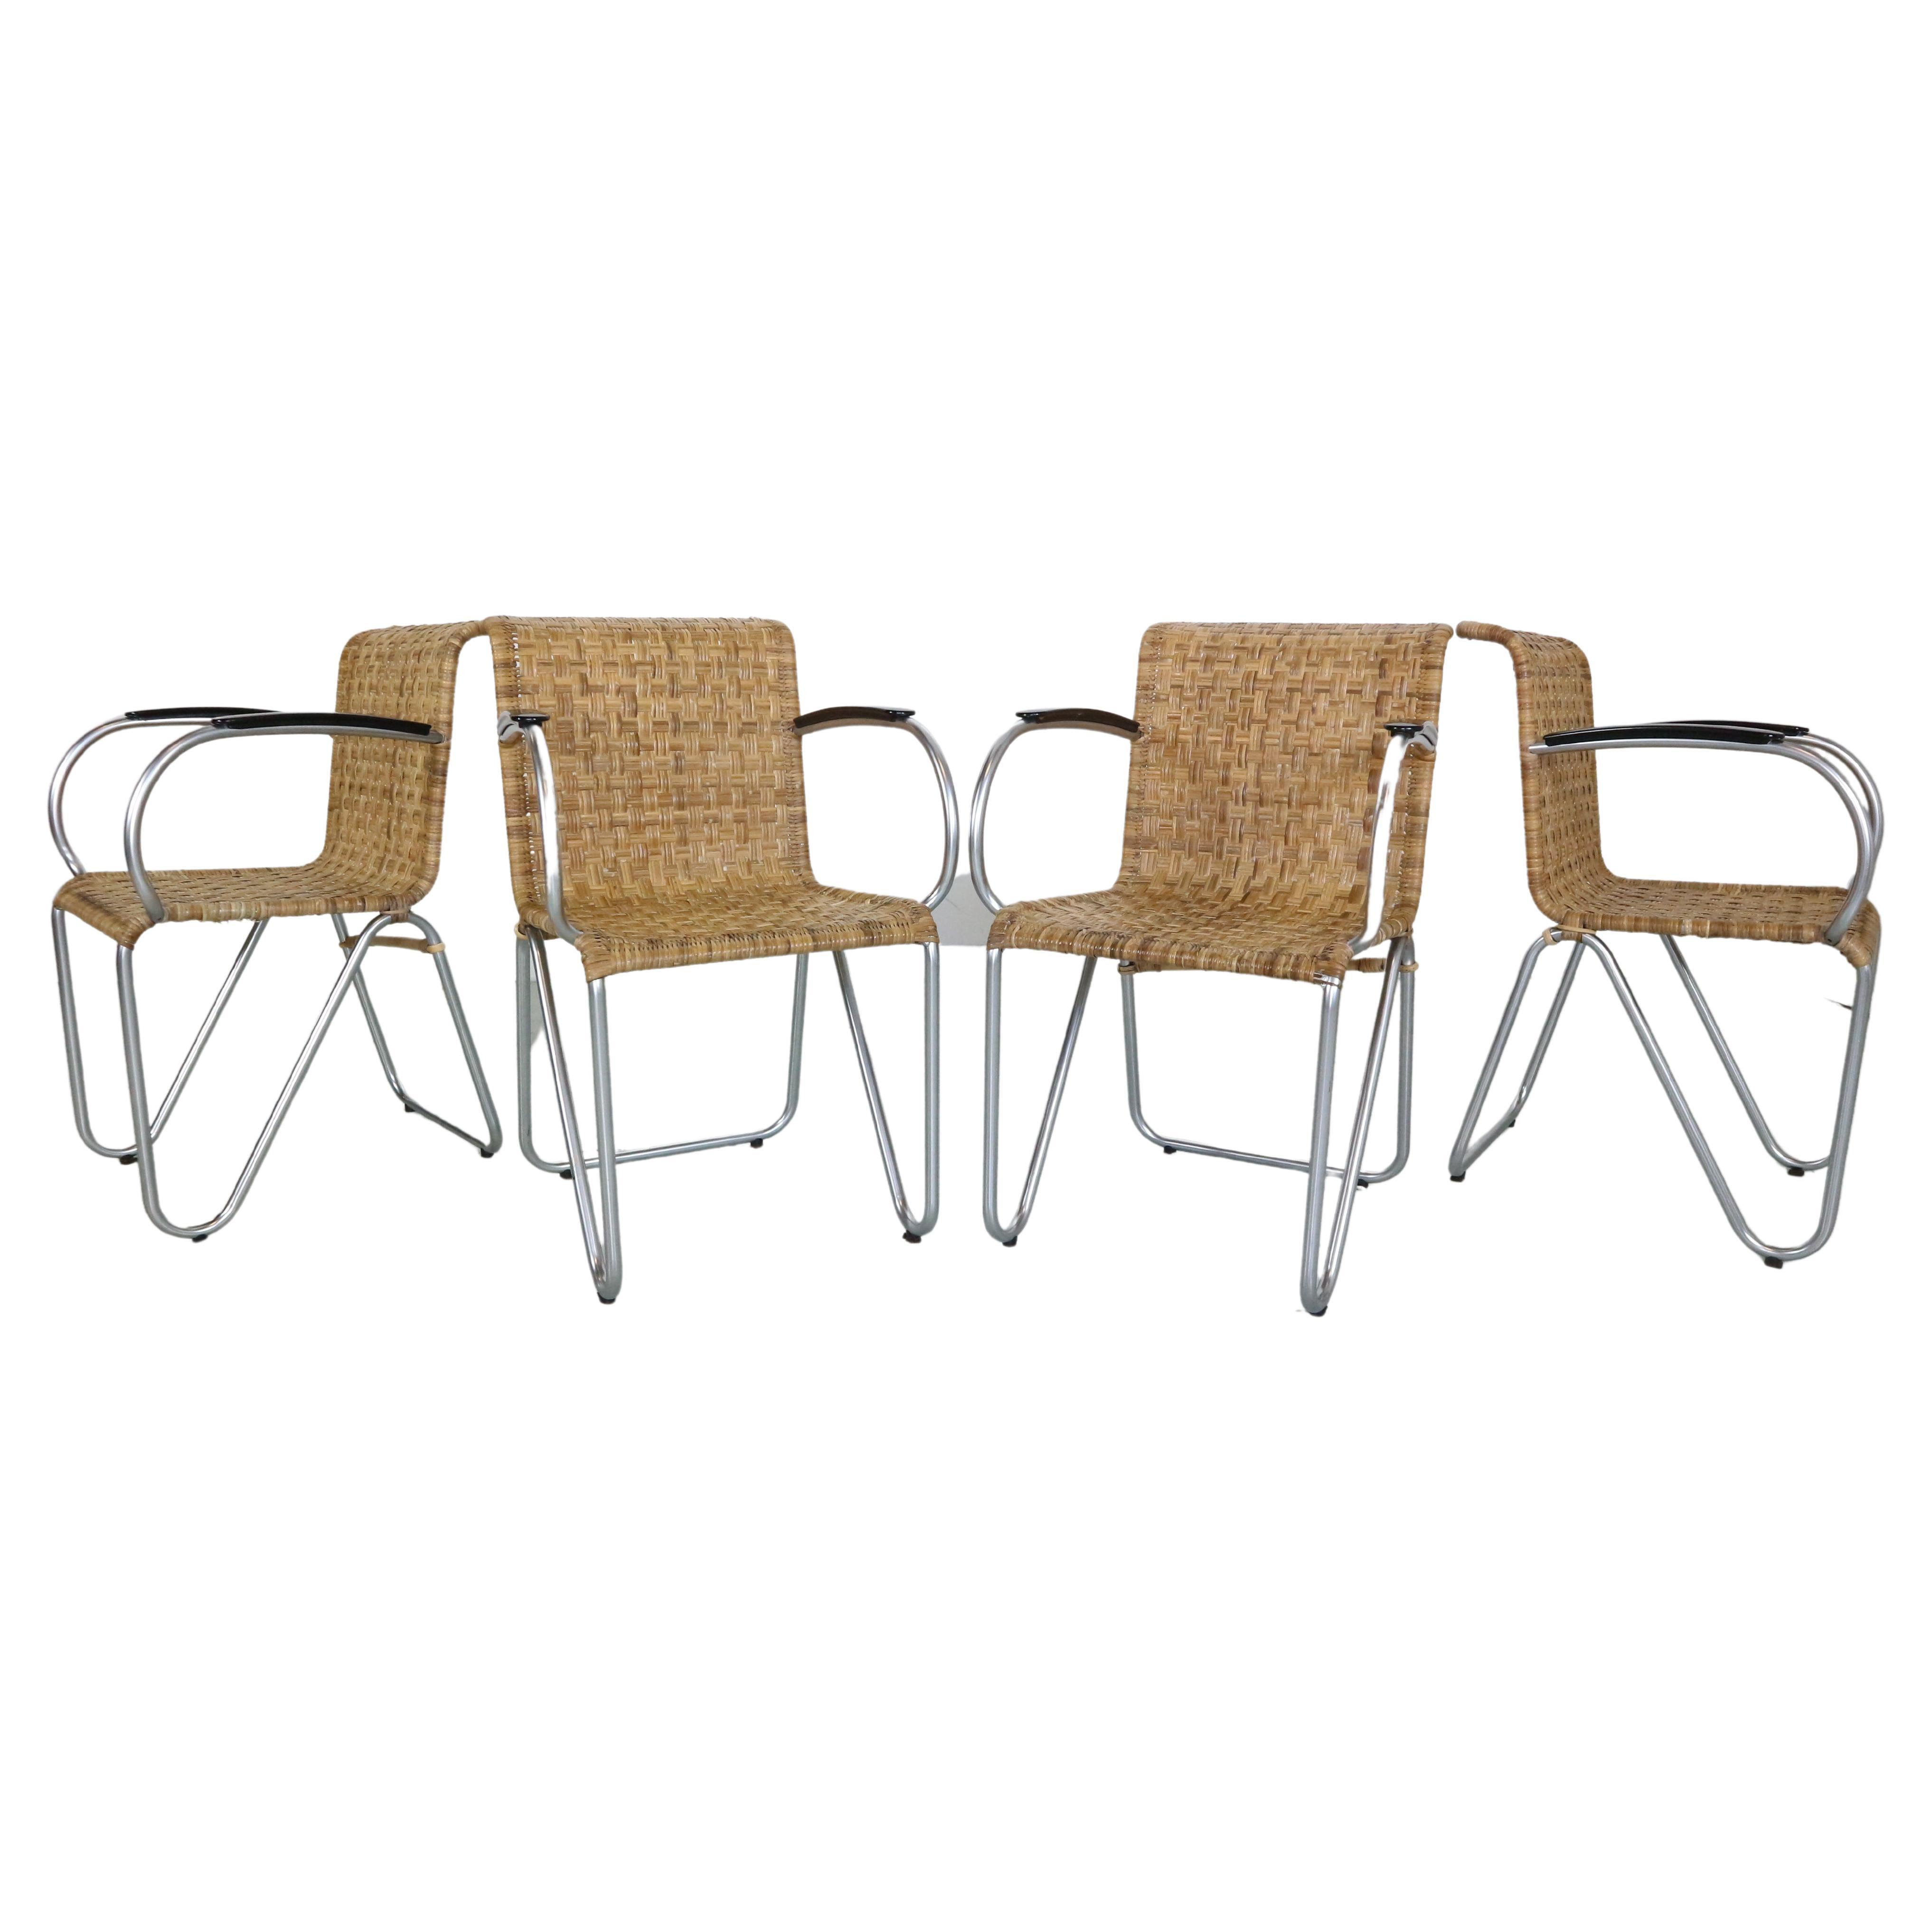 Gispen - Ensemble de 4 fauteuils diagonaux en osier et cadre à tubes, design néerlandais des années 1930